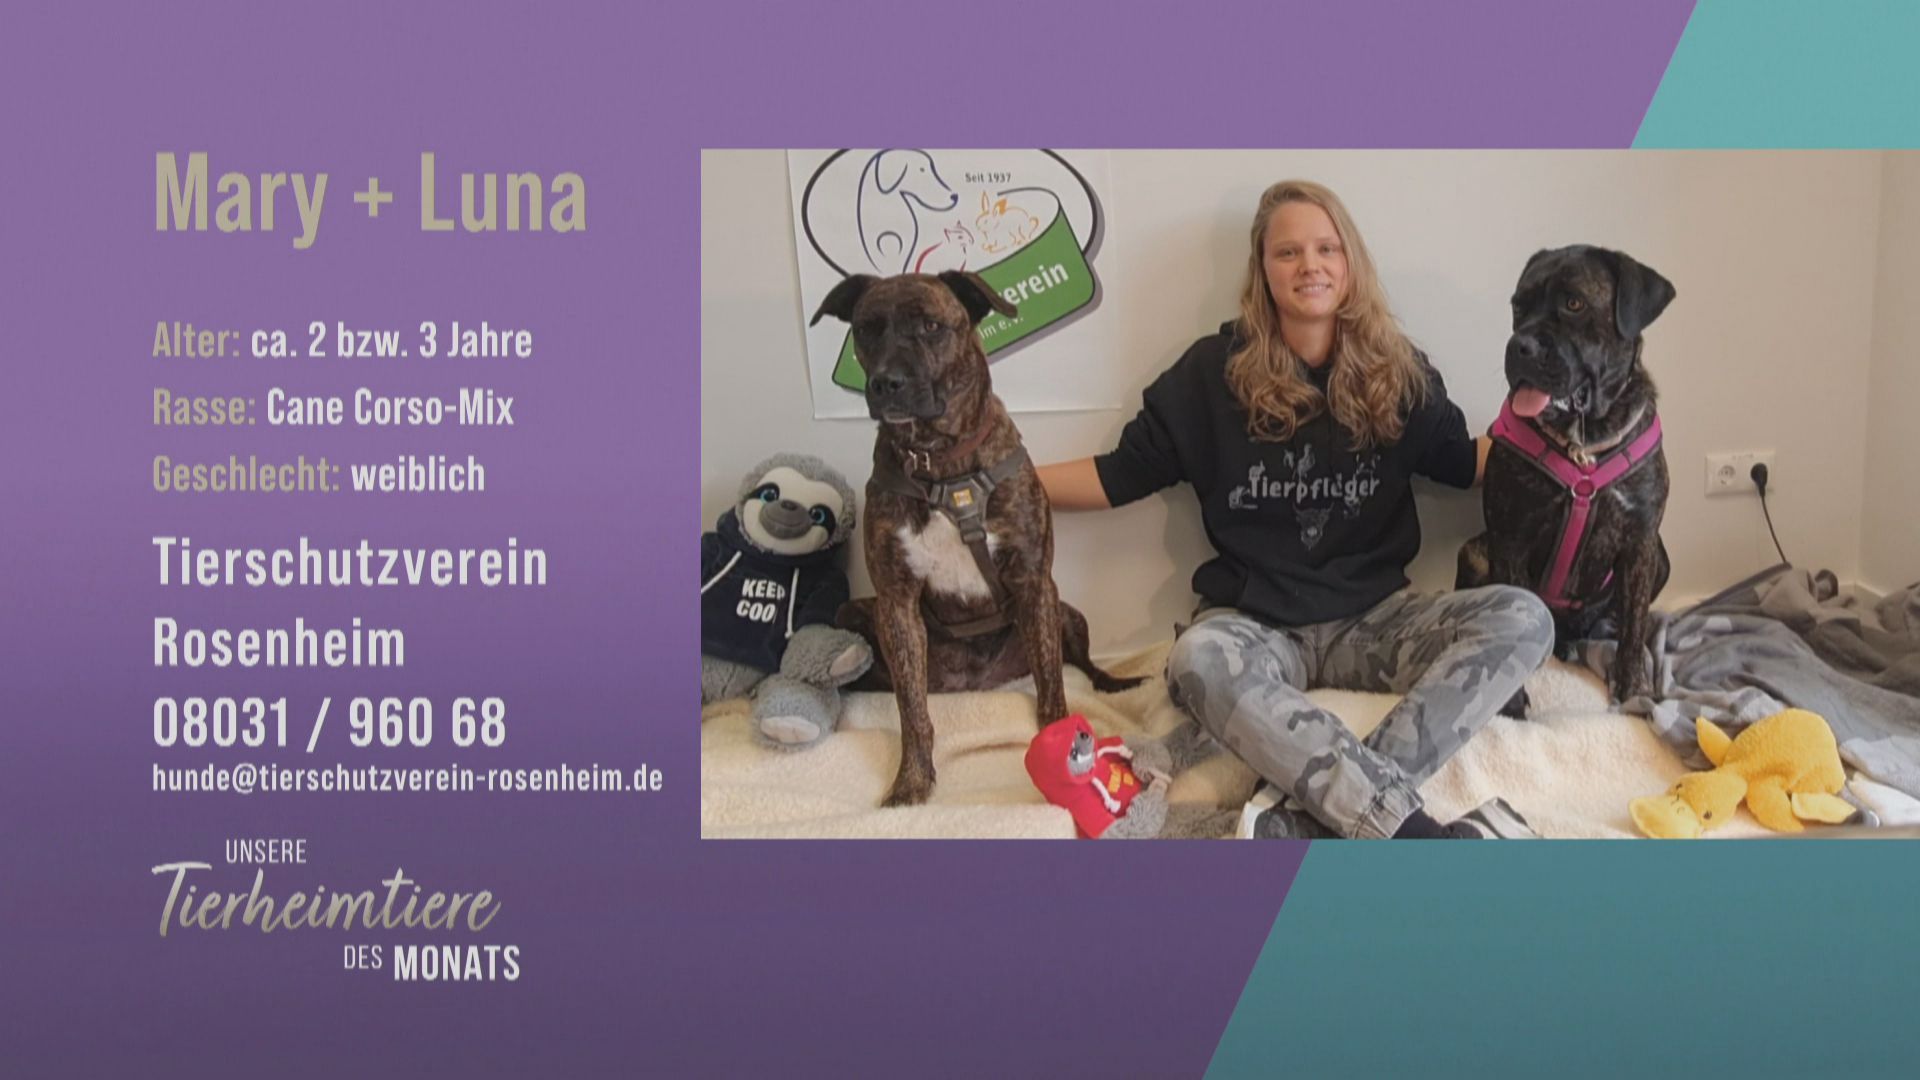 Für Erfahrene: Die Cane Corso-Mix-Hundedamen Mary und Luna